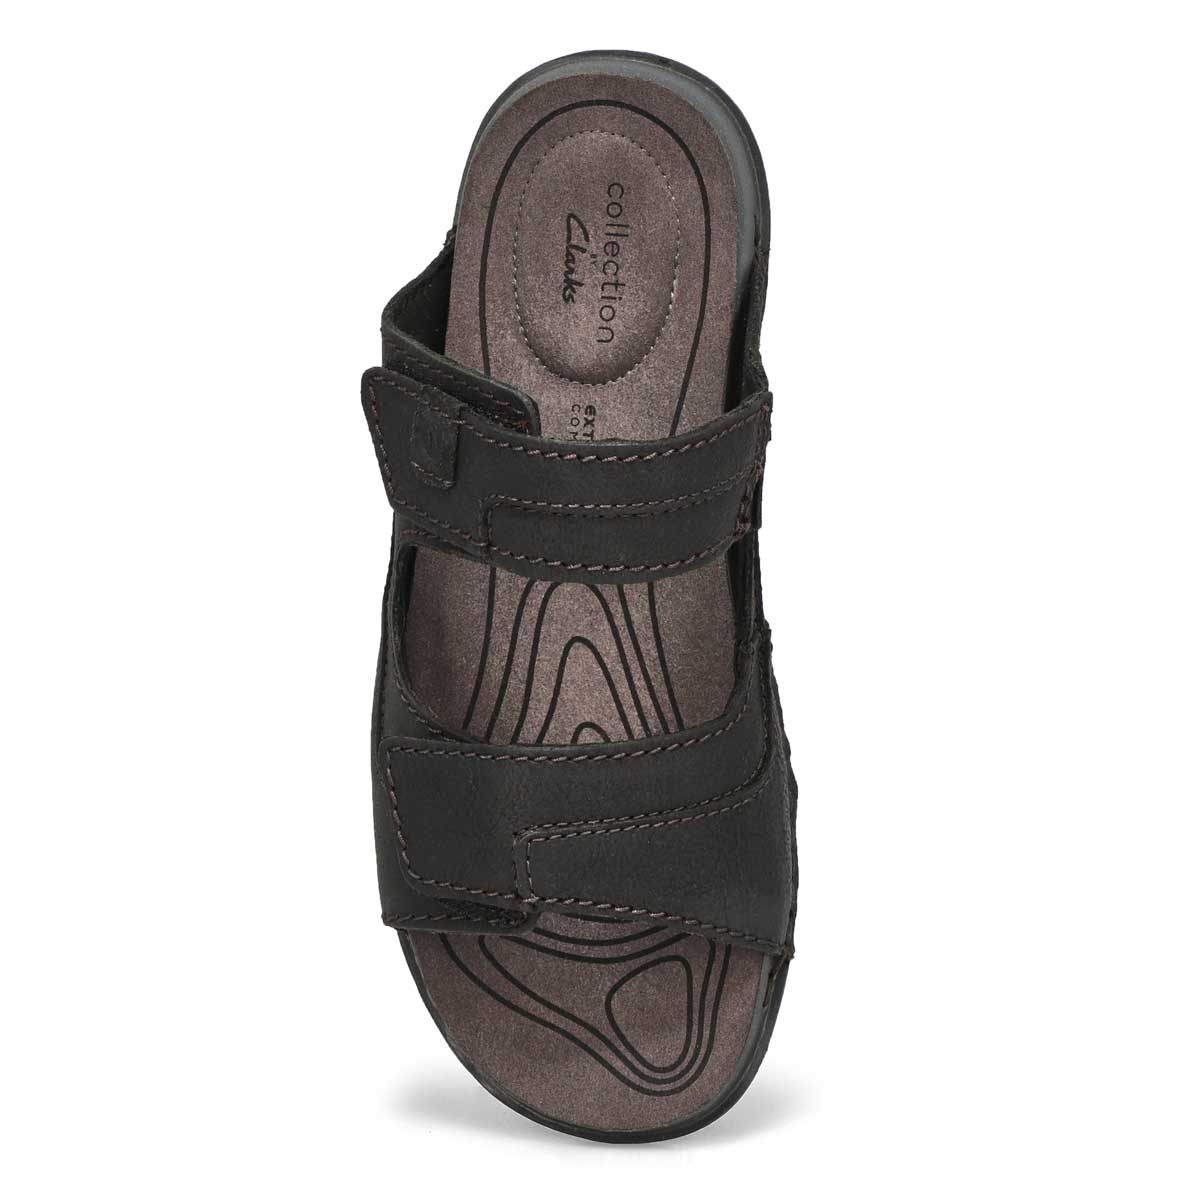 Mens Clarks Ultimate Comfort Adjustable Sandals 'Hapsford Trail'  | eBay